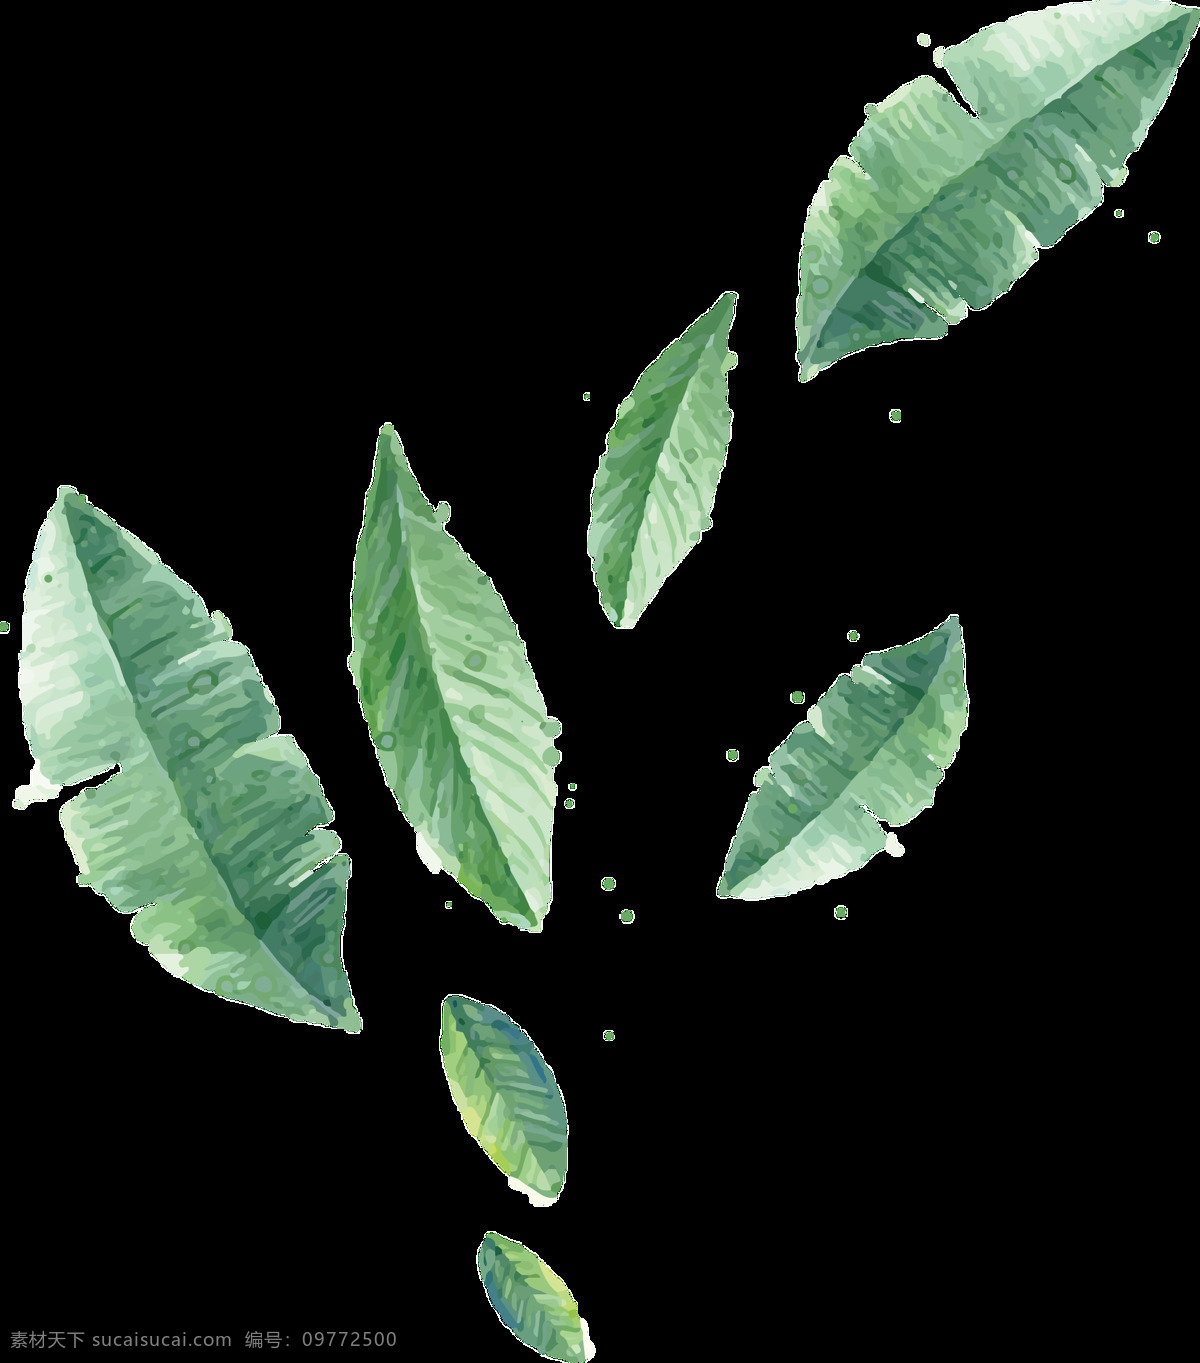 一片片 大小 不同 树叶 透明 植物 绿色 免扣素材 透明素材 叶片 叶子 装饰图片